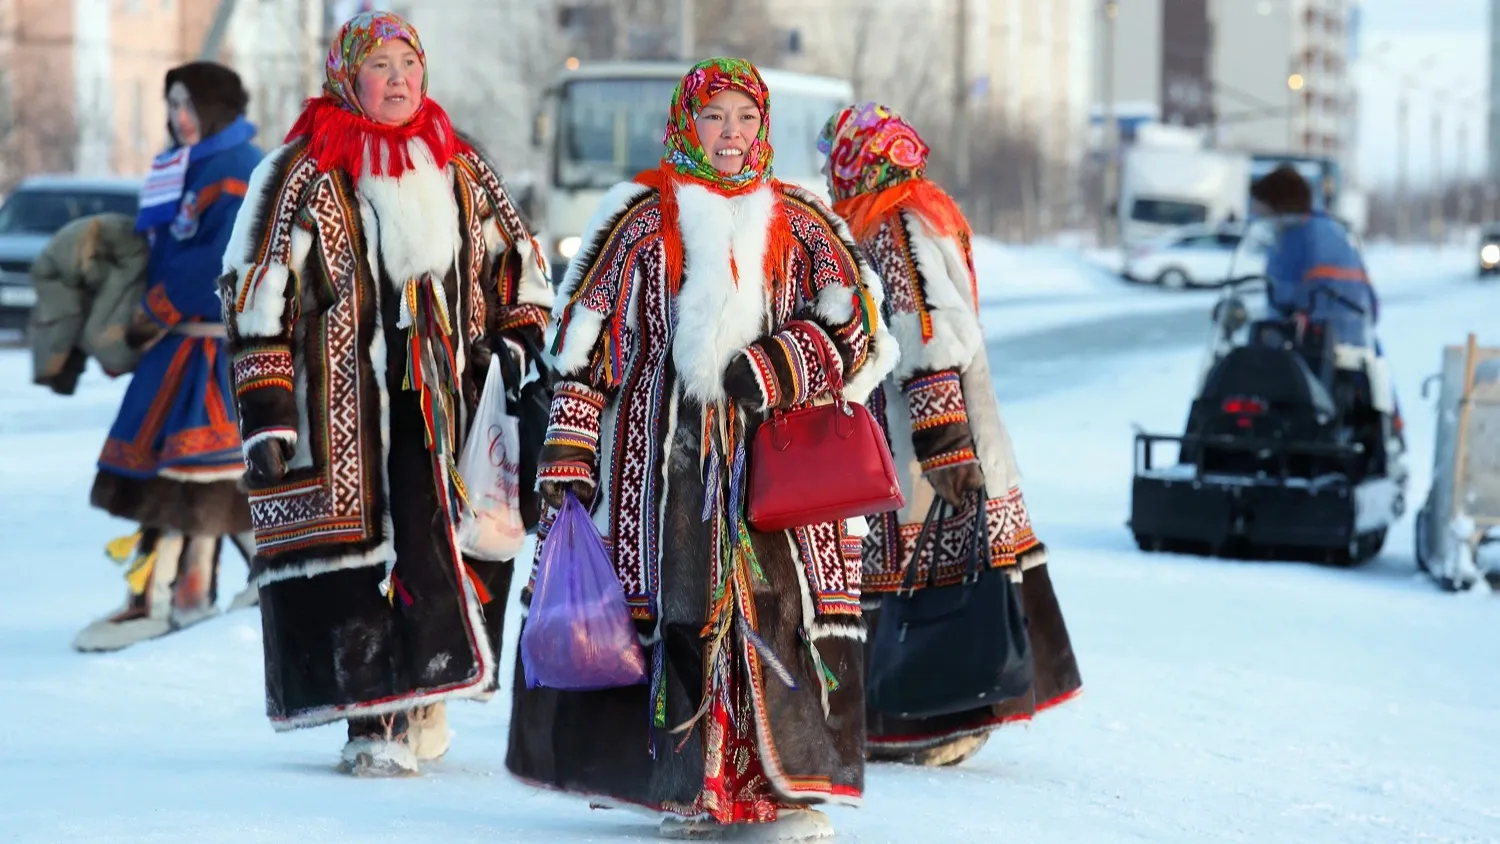 В реестр коренных народов России включили уже более 14 000 ямальцев. Фото: Grigorii Pisotsckii / shutterstock.com / Fotodom